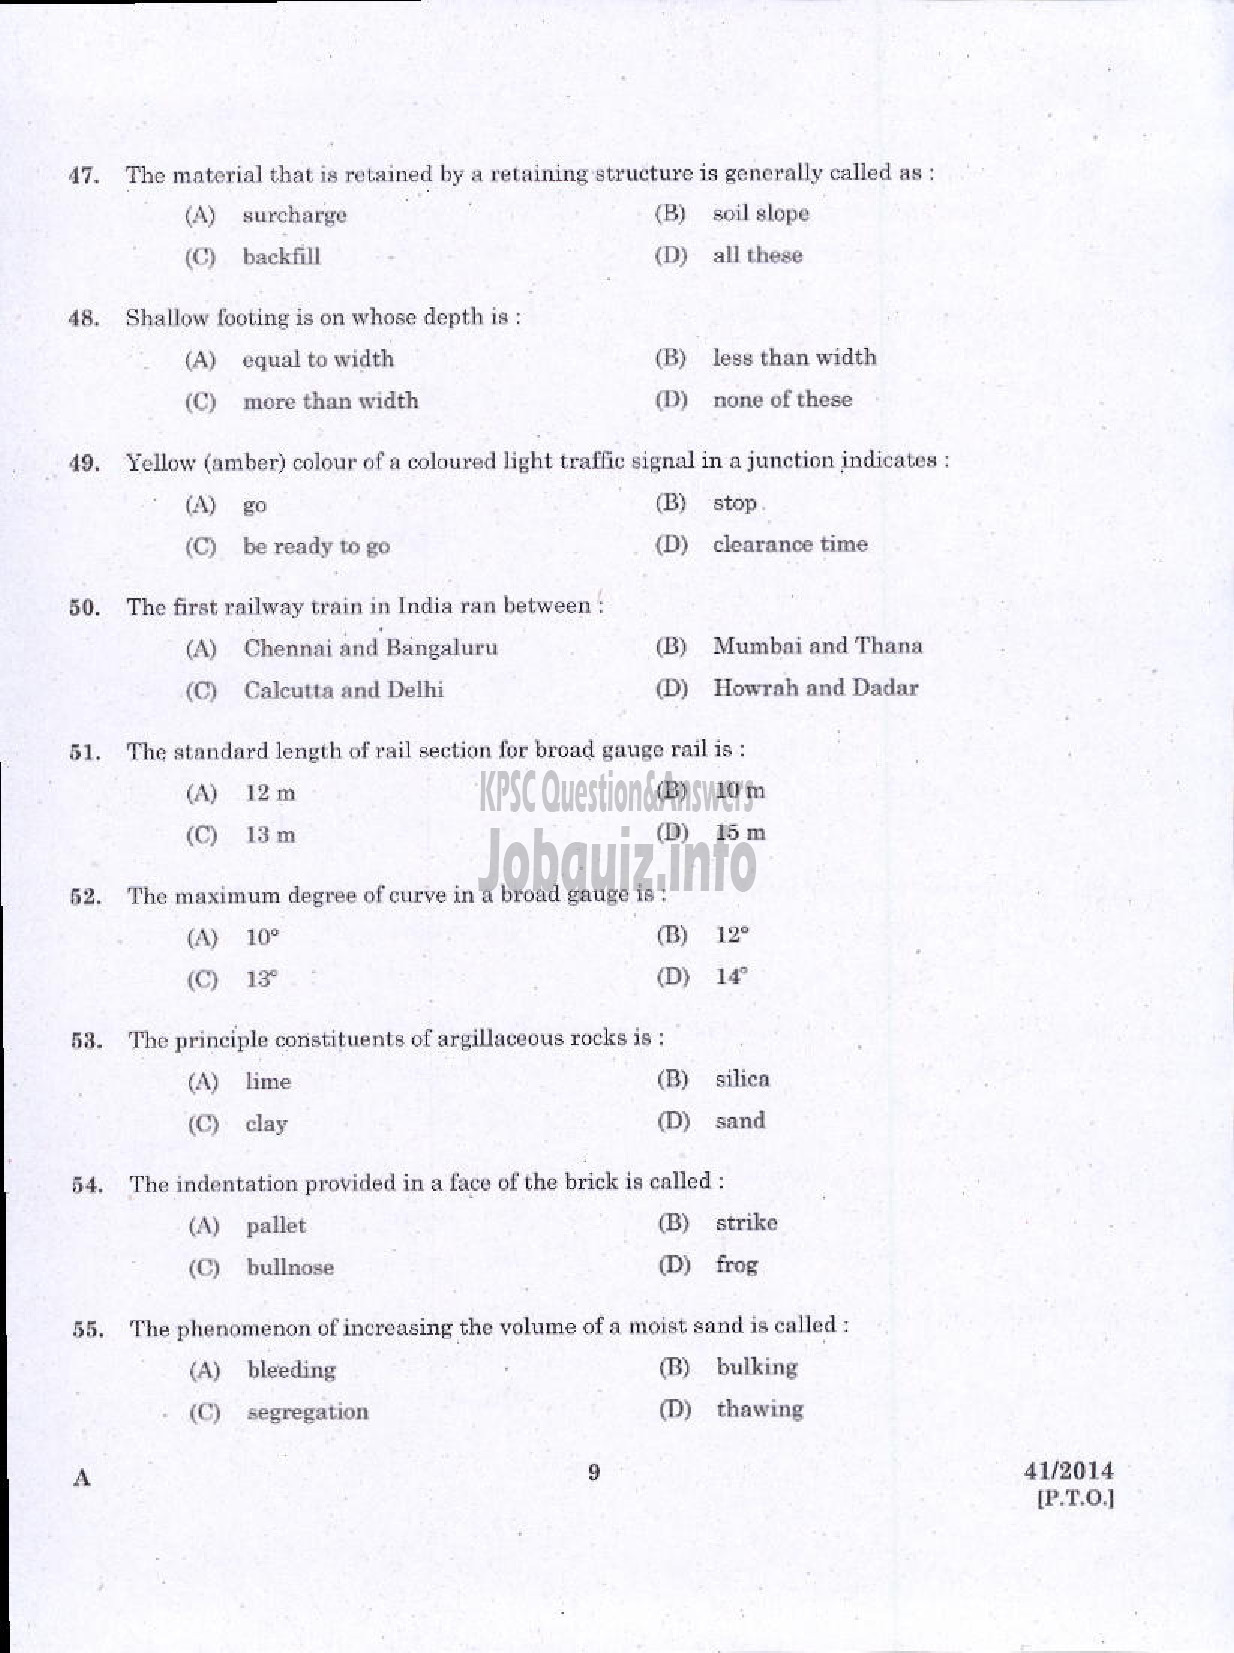 Kerala PSC Question Paper - WORK SUPERVISOR OVERSEER GRADE II DRAUGHTSMAN GRADE II-7